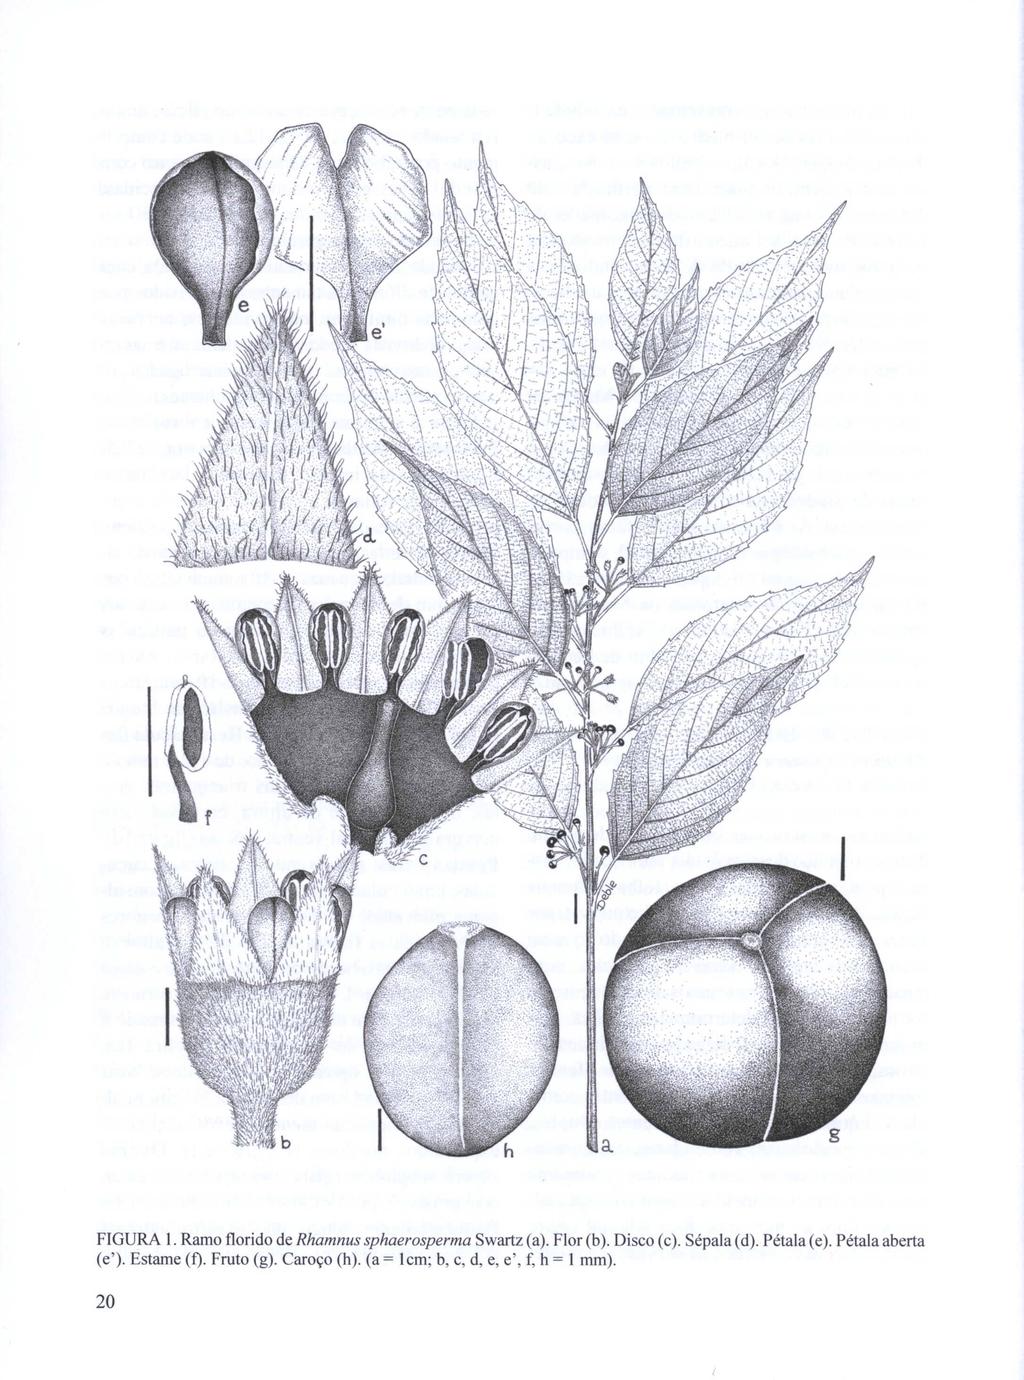 FIGURA J. Ramo florido de Rhamnus sphaerosperma Swartz (a). Flor (b). Disco (c). Sépala(d). (e').